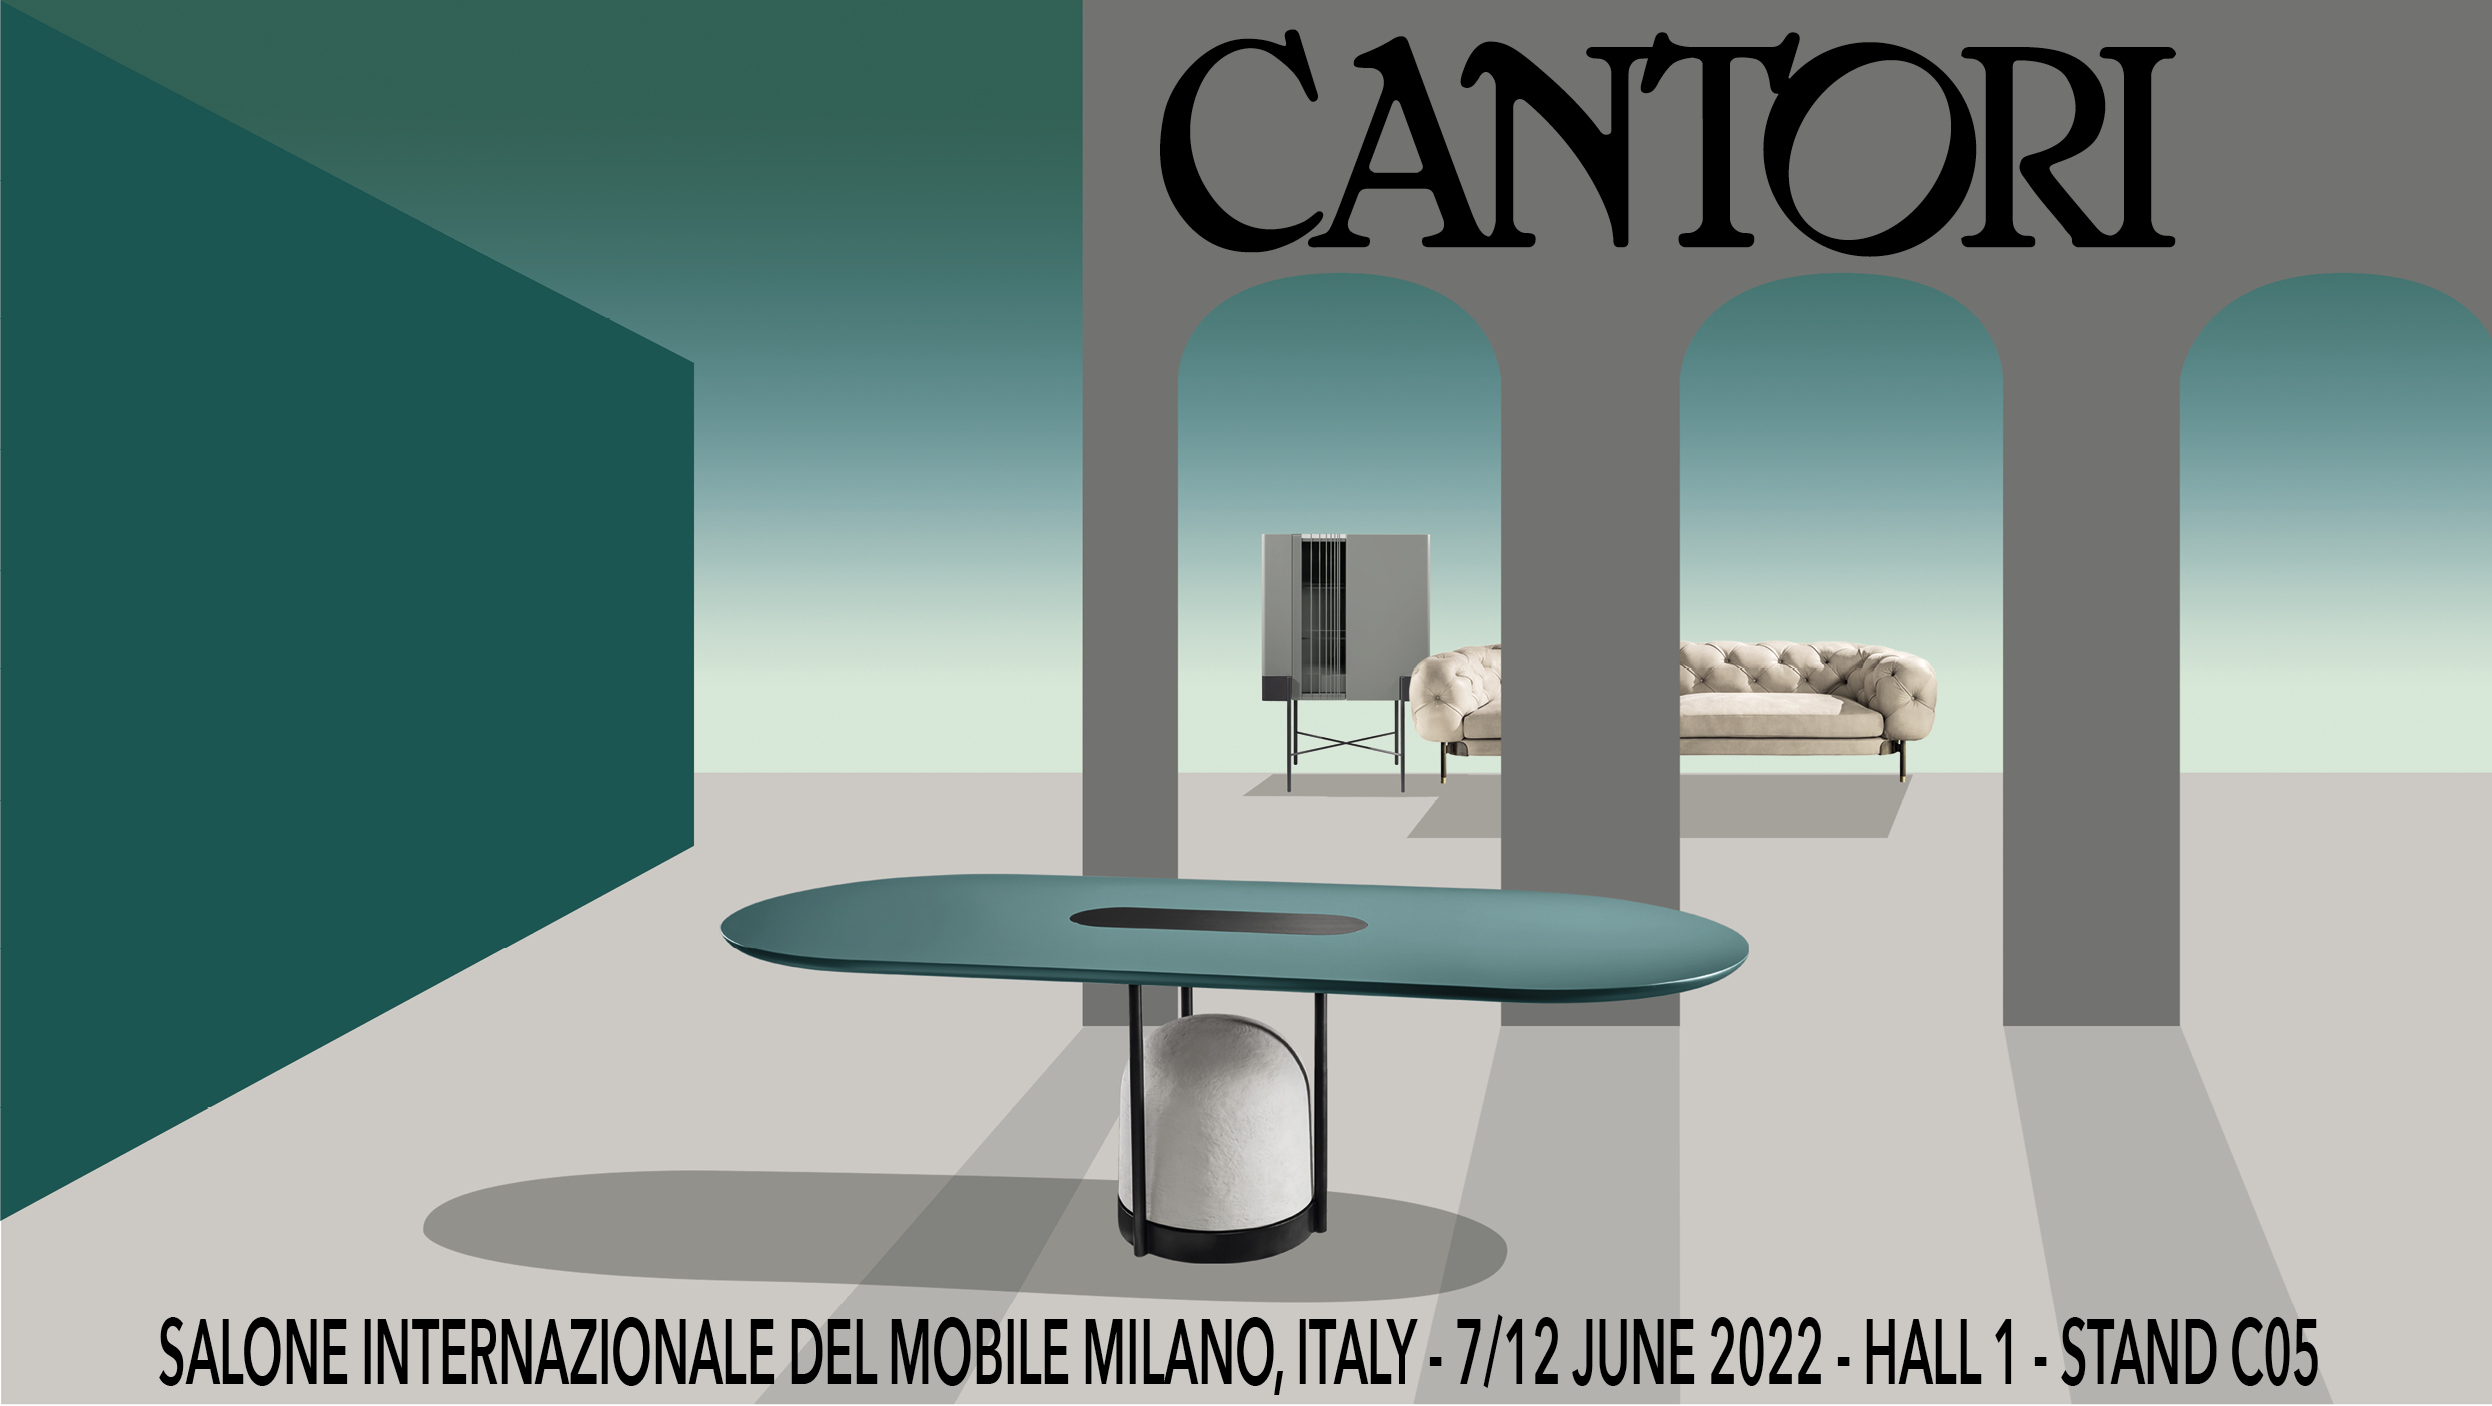 20/04/2022 Cantori at Salone del Mobile of Milano 2022 - Cantori